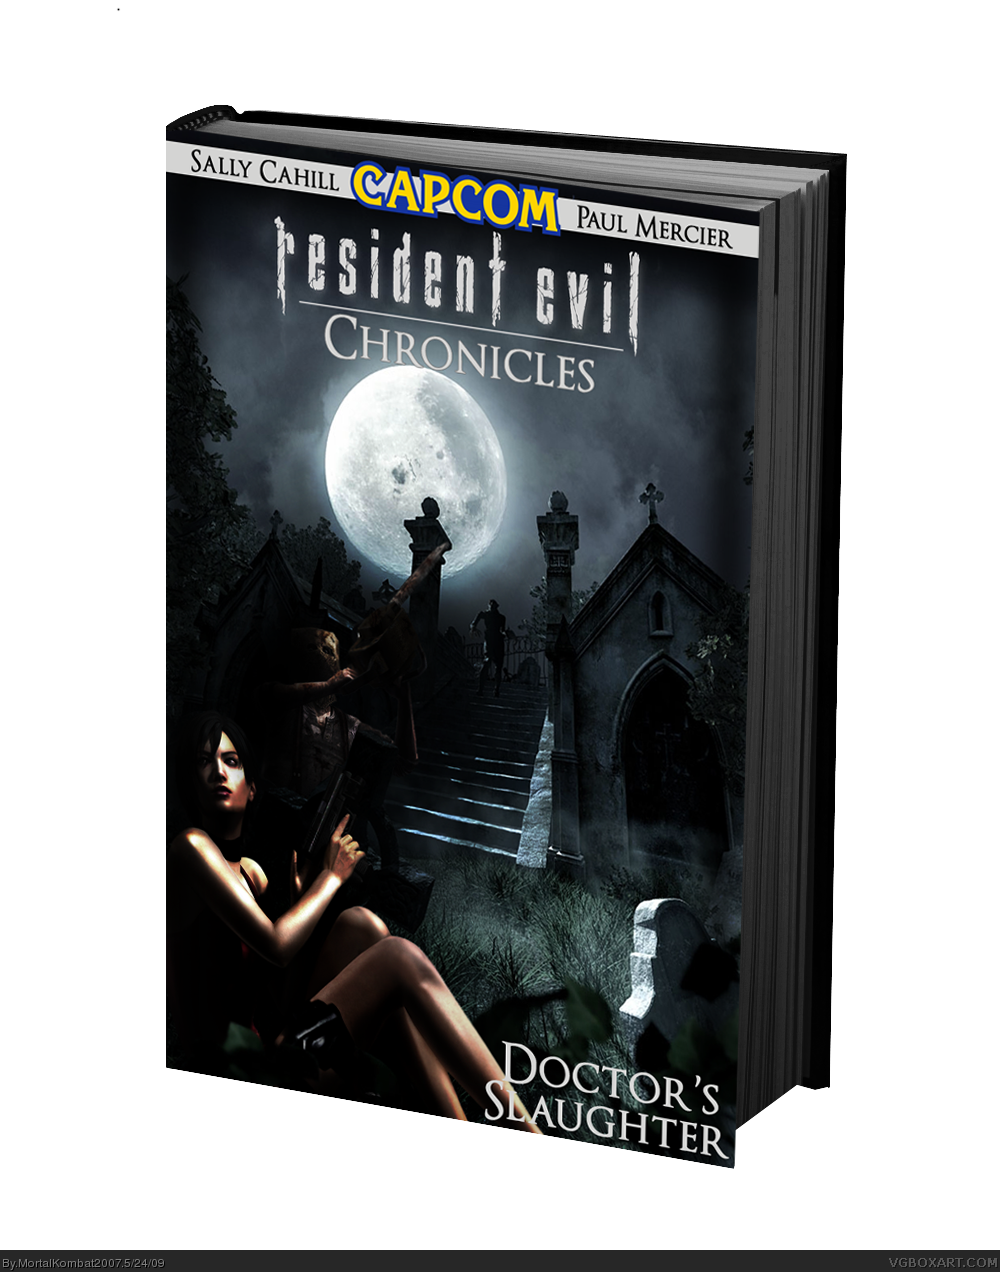 Resident Evil box cover